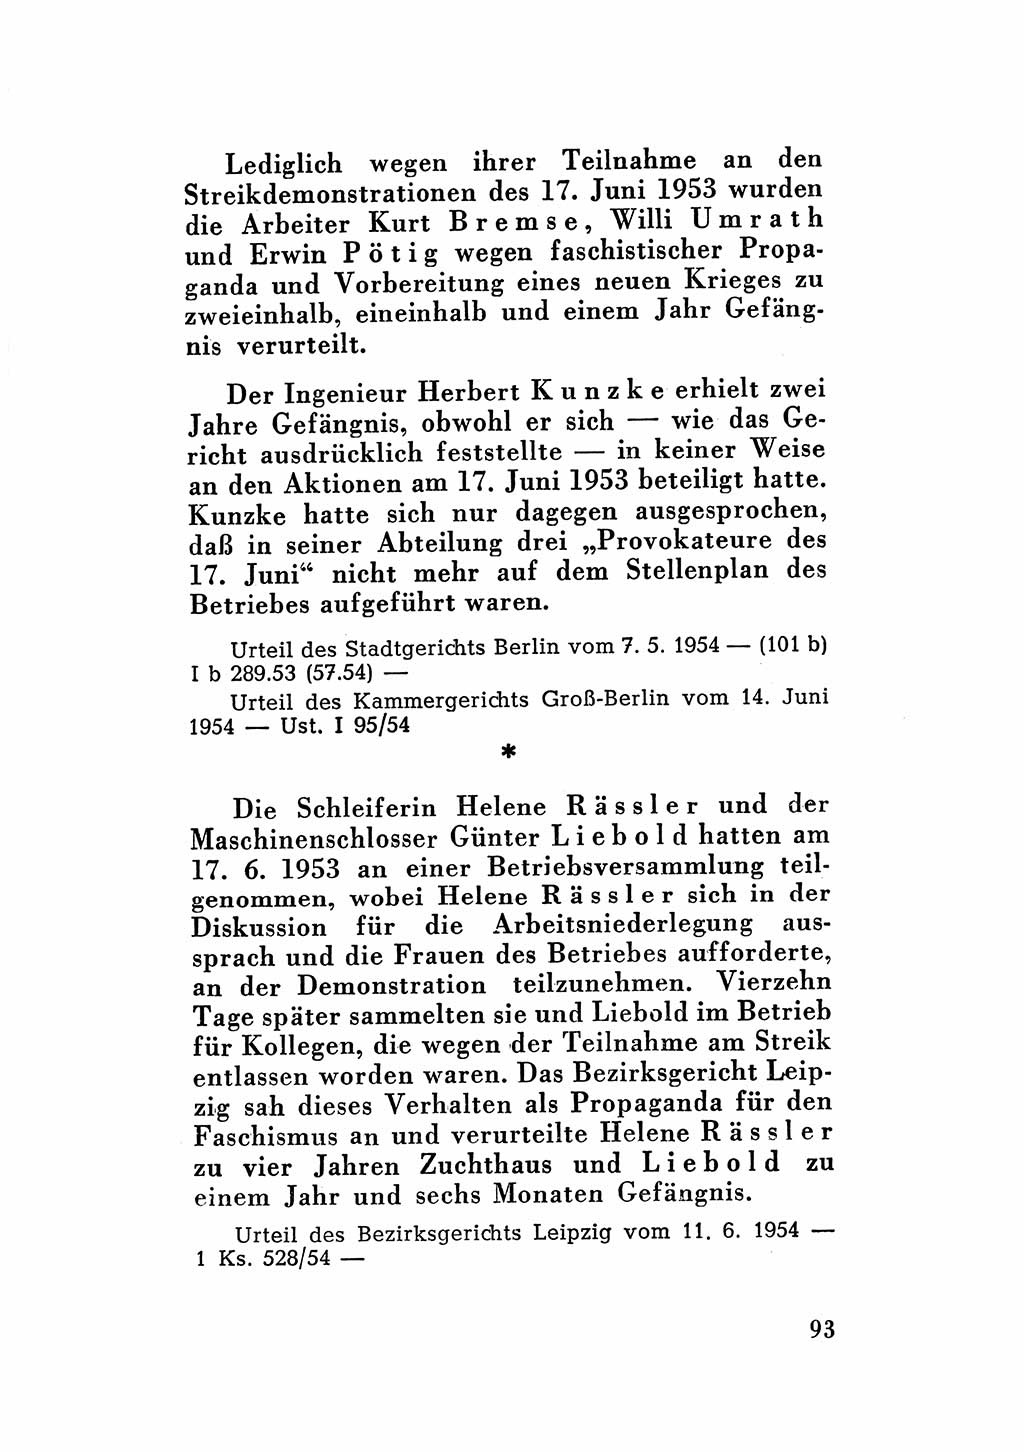 Katalog des Unrechts, Untersuchungsausschuß Freiheitlicher Juristen (UfJ) [Bundesrepublik Deutschland (BRD)] 1956, Seite 93 (Kat. UnR. UfJ BRD 1956, S. 93)